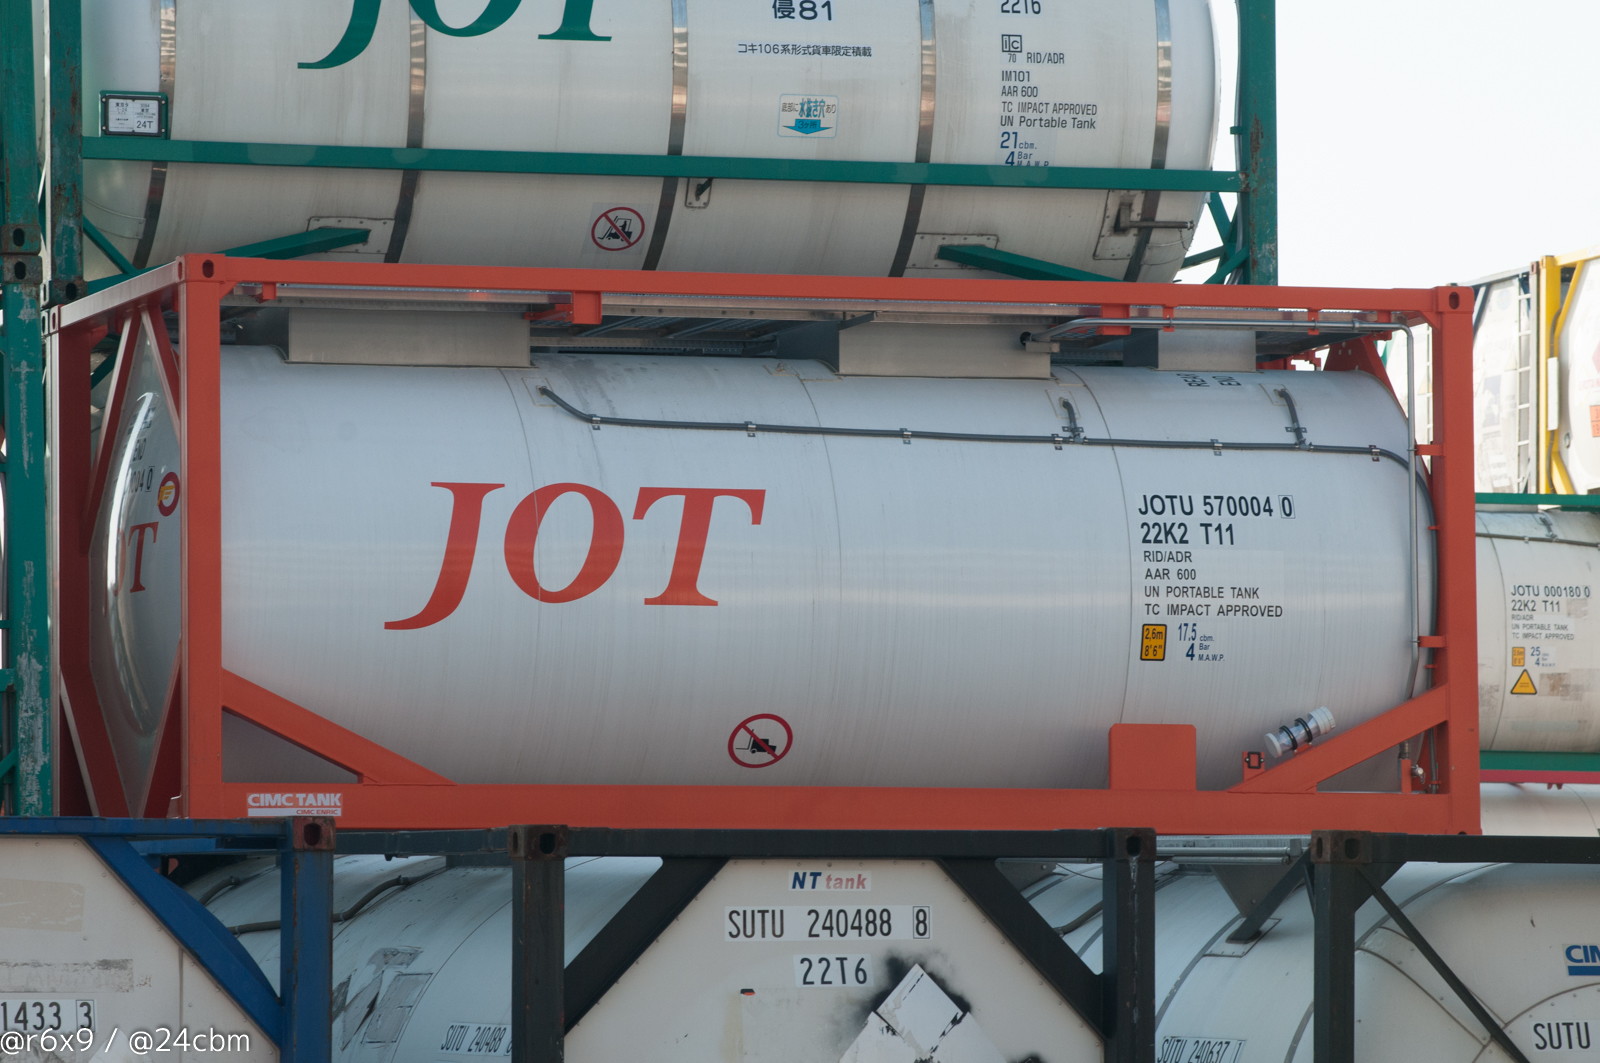 JOTU 570004 0 | ISOタンクコンテナデータベース